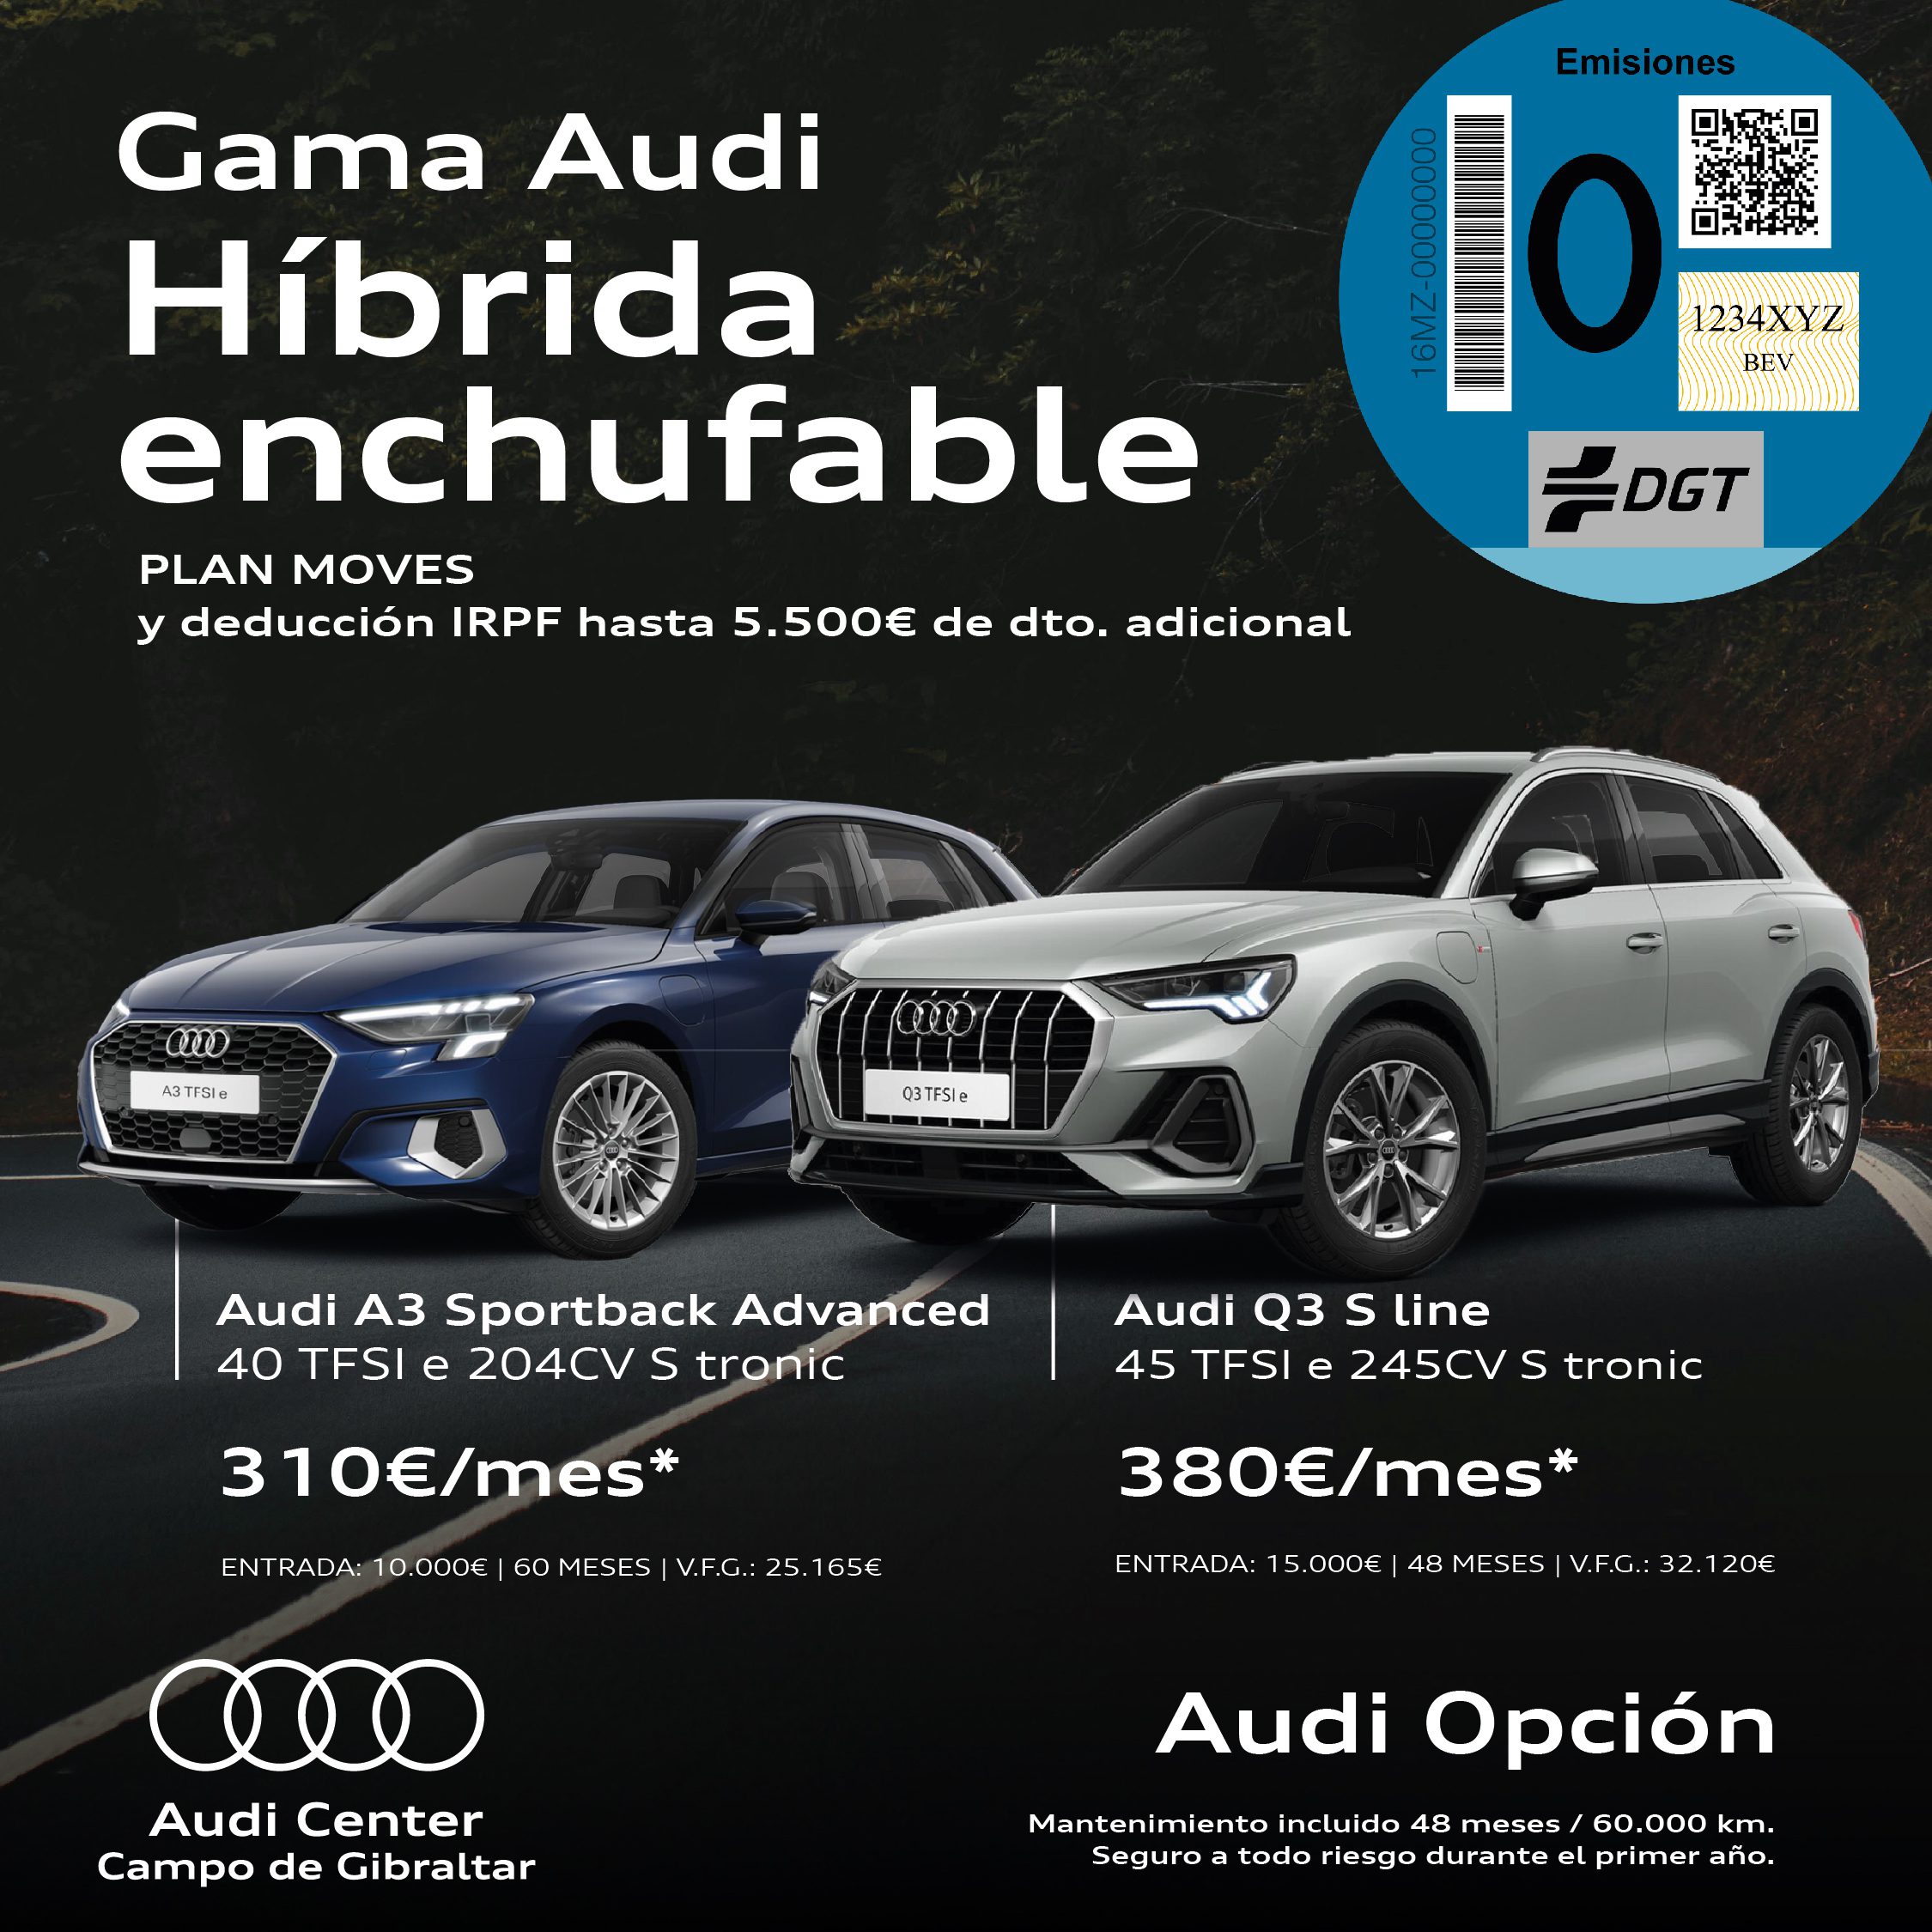 ¡Descubre la gama de Audi Híbrida Enchufable!